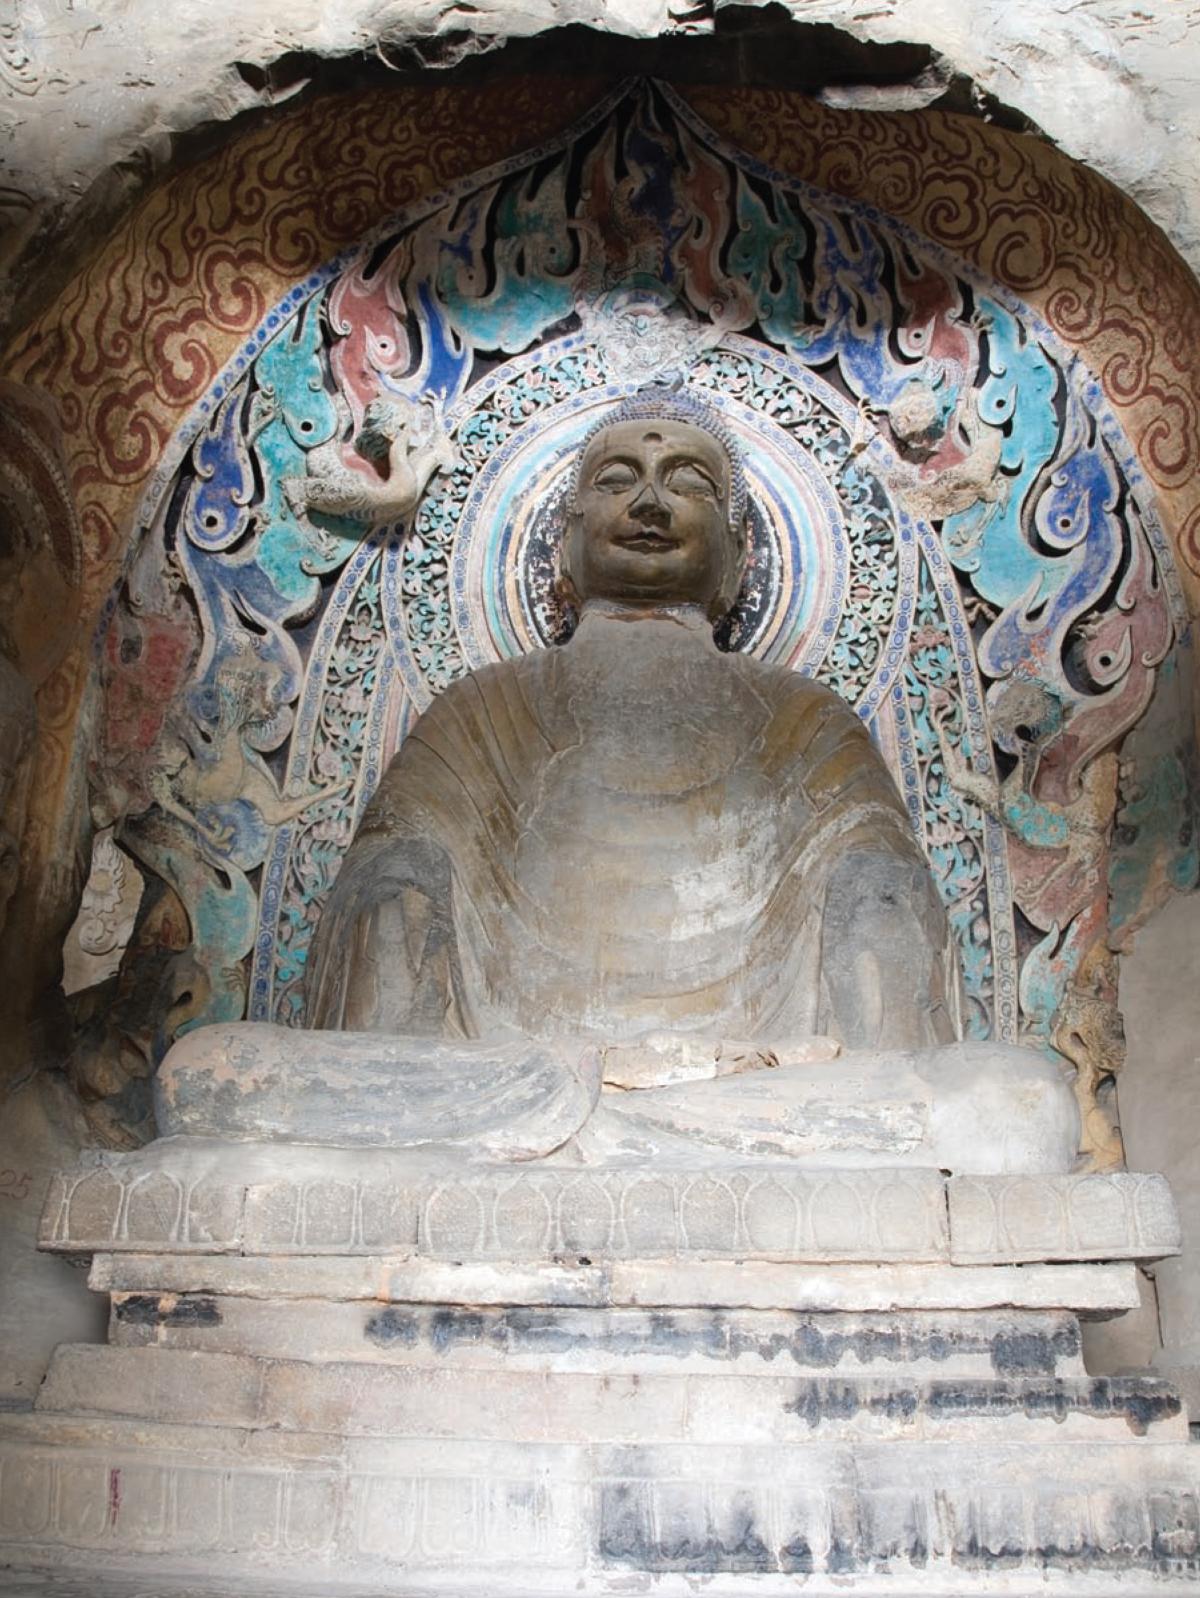 Sculpture of the "awakened" Buddha